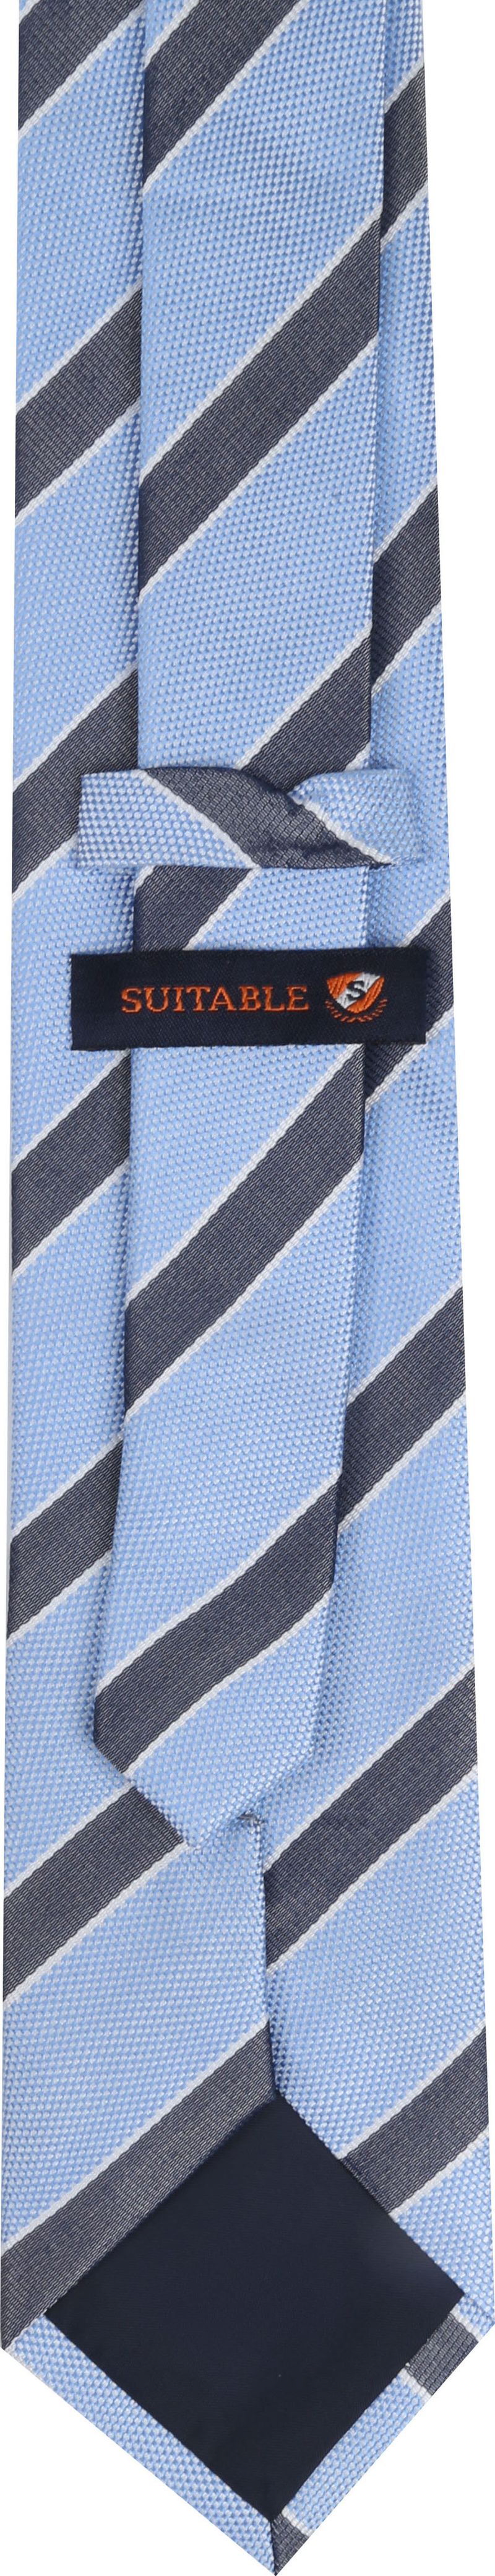 Suitable Krawatte Blau F01-27 - günstig online kaufen